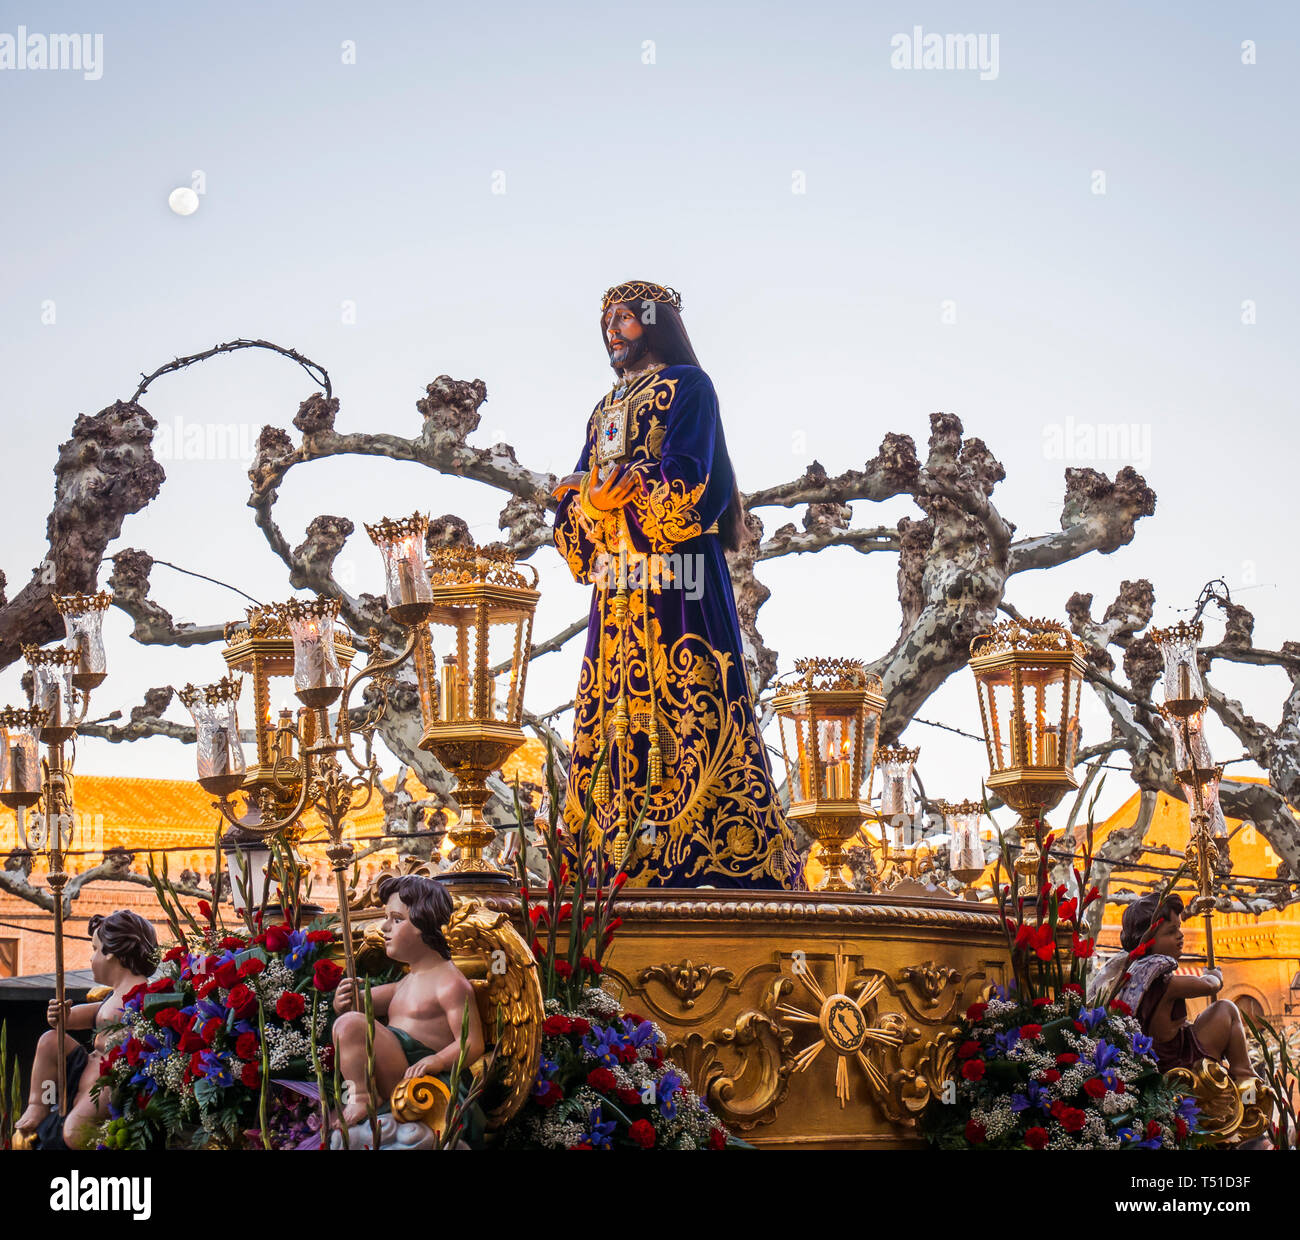 Procesión de Semana Santa del Cristo de Medinaceli en la plaza Cervantes de Alcalá de Henares. Madrid. España Stock Photo